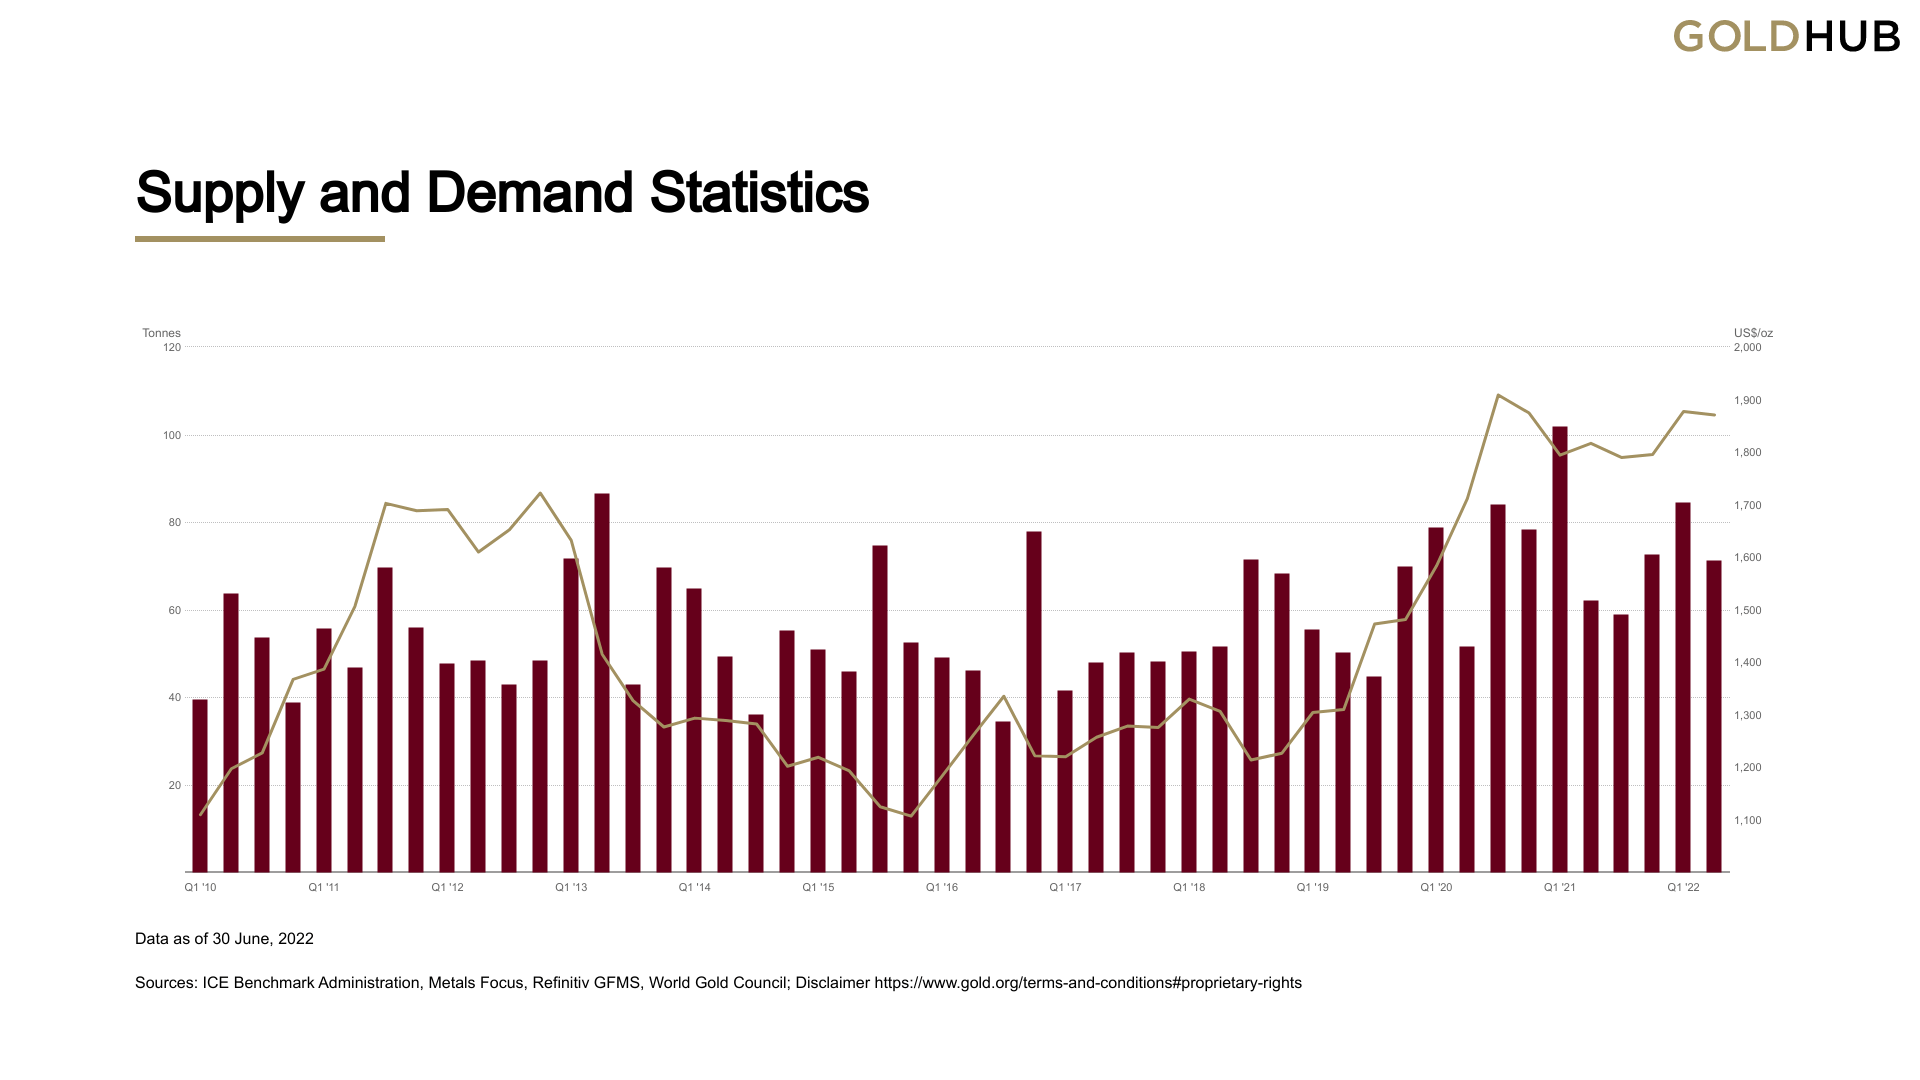 Graphique de la demande de pièces d'or dans une optique d'investissement par quart d'an depuis le Q1 de 2010 jusqu'au Q2 2022 